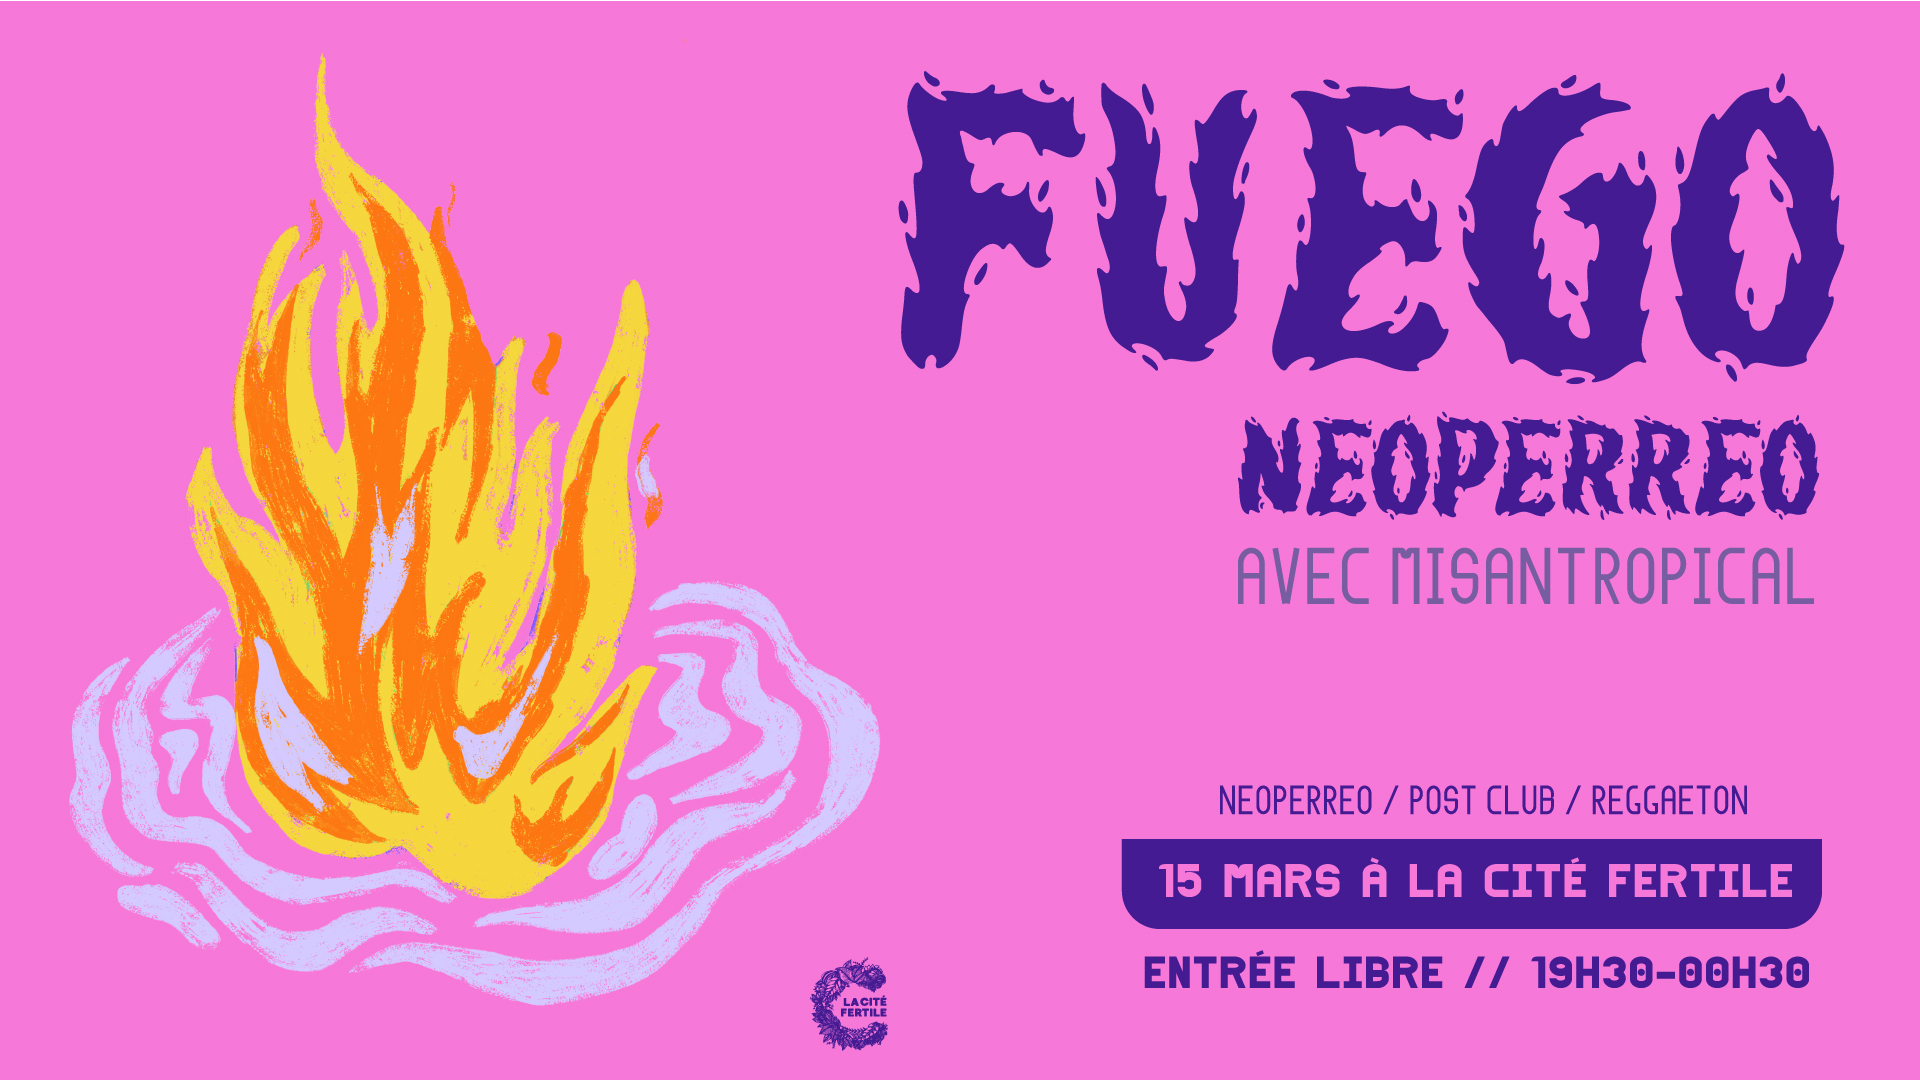 Fuego : soirée neoperreo avec Misantropical